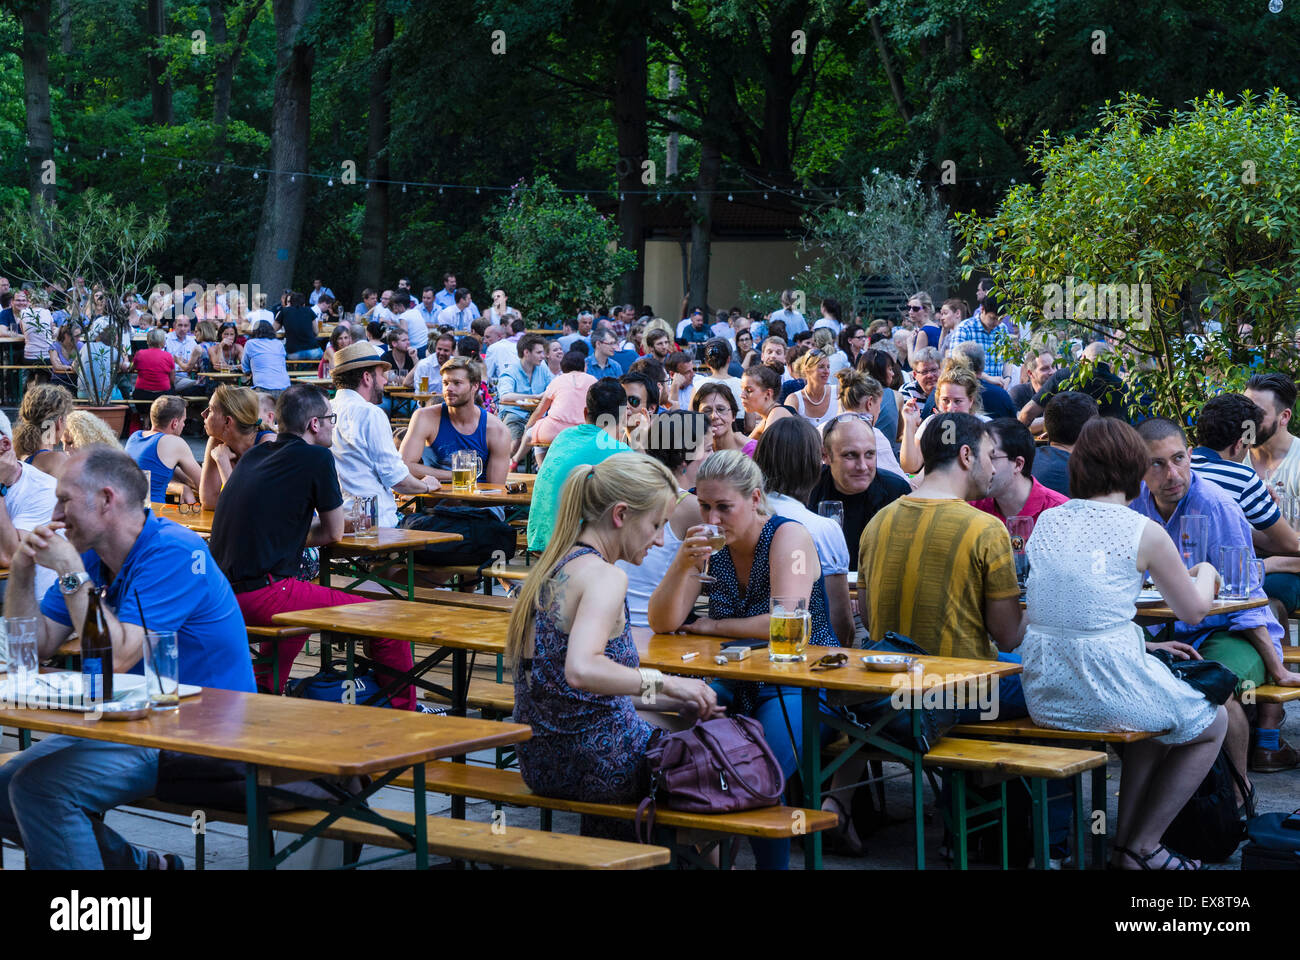 Busy beer garden in summer at Cafe am Neuen See in Tiergarten park in Berlin Germany Stock Photo